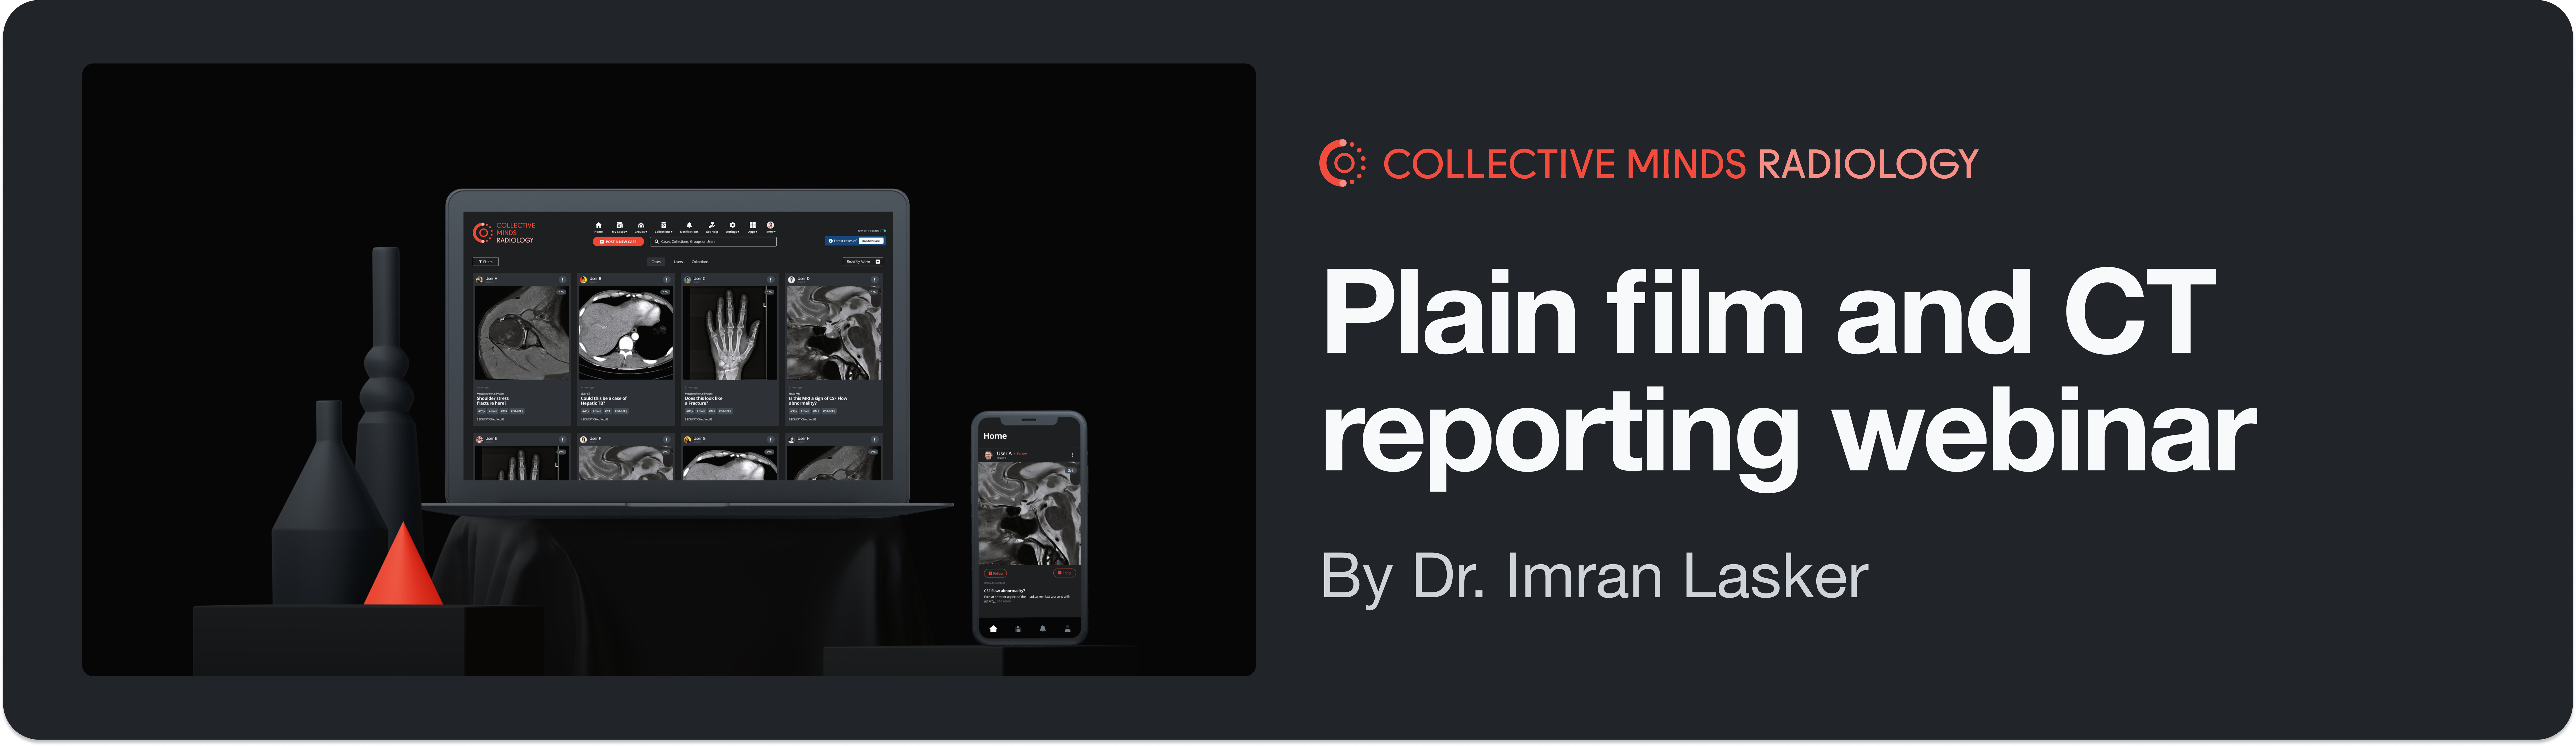 Plain film and CT reporting webinar